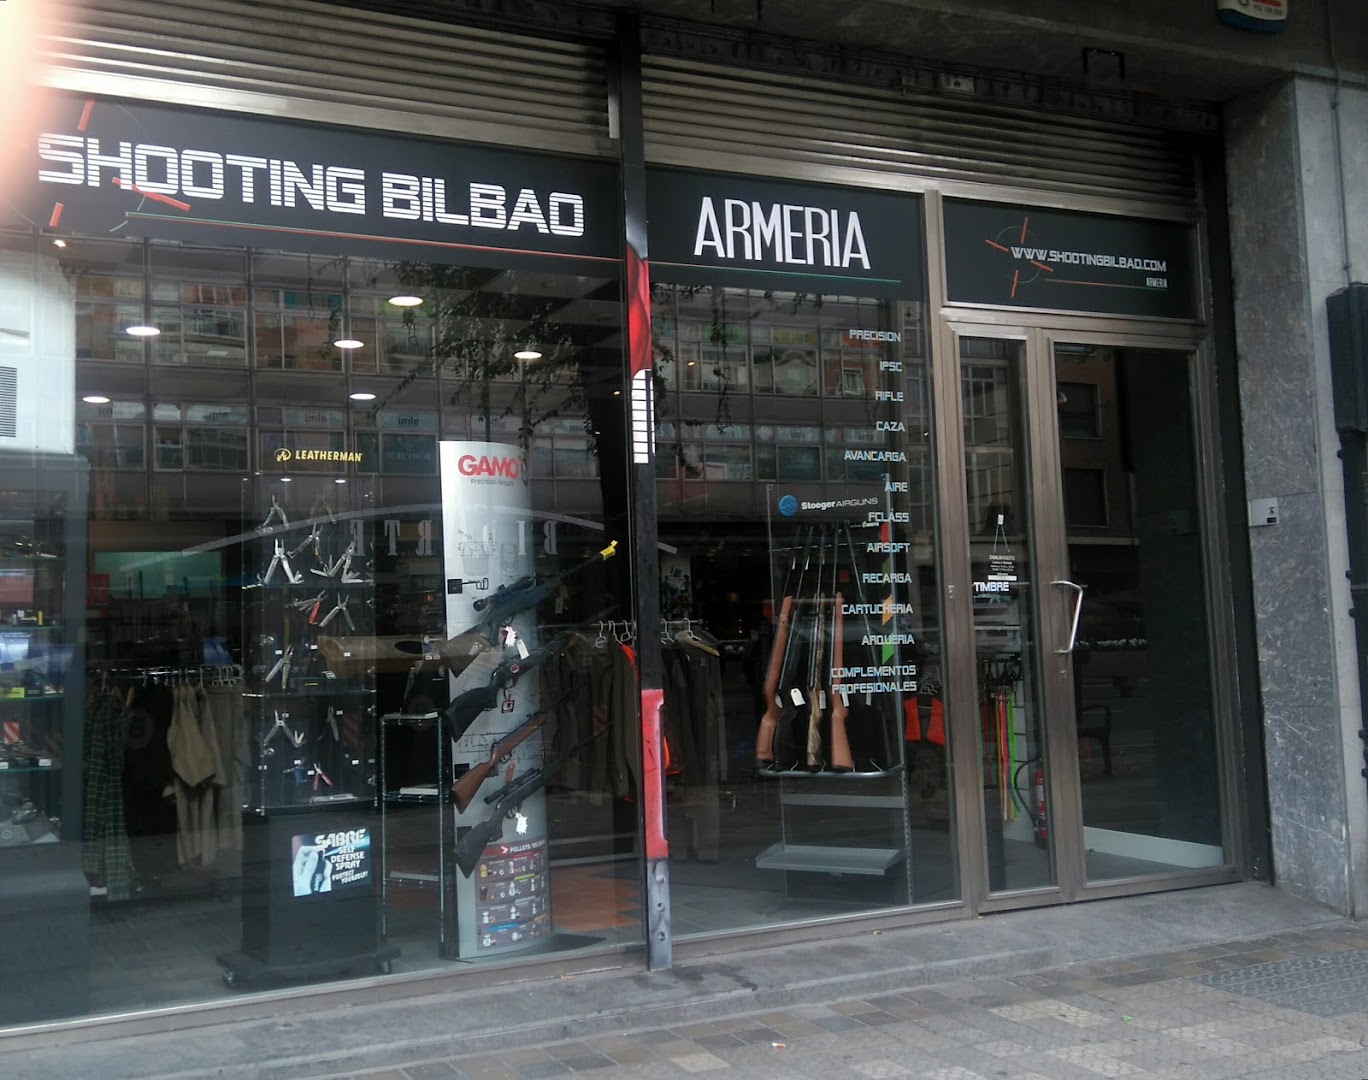 Armería "Shooting Bilbao"